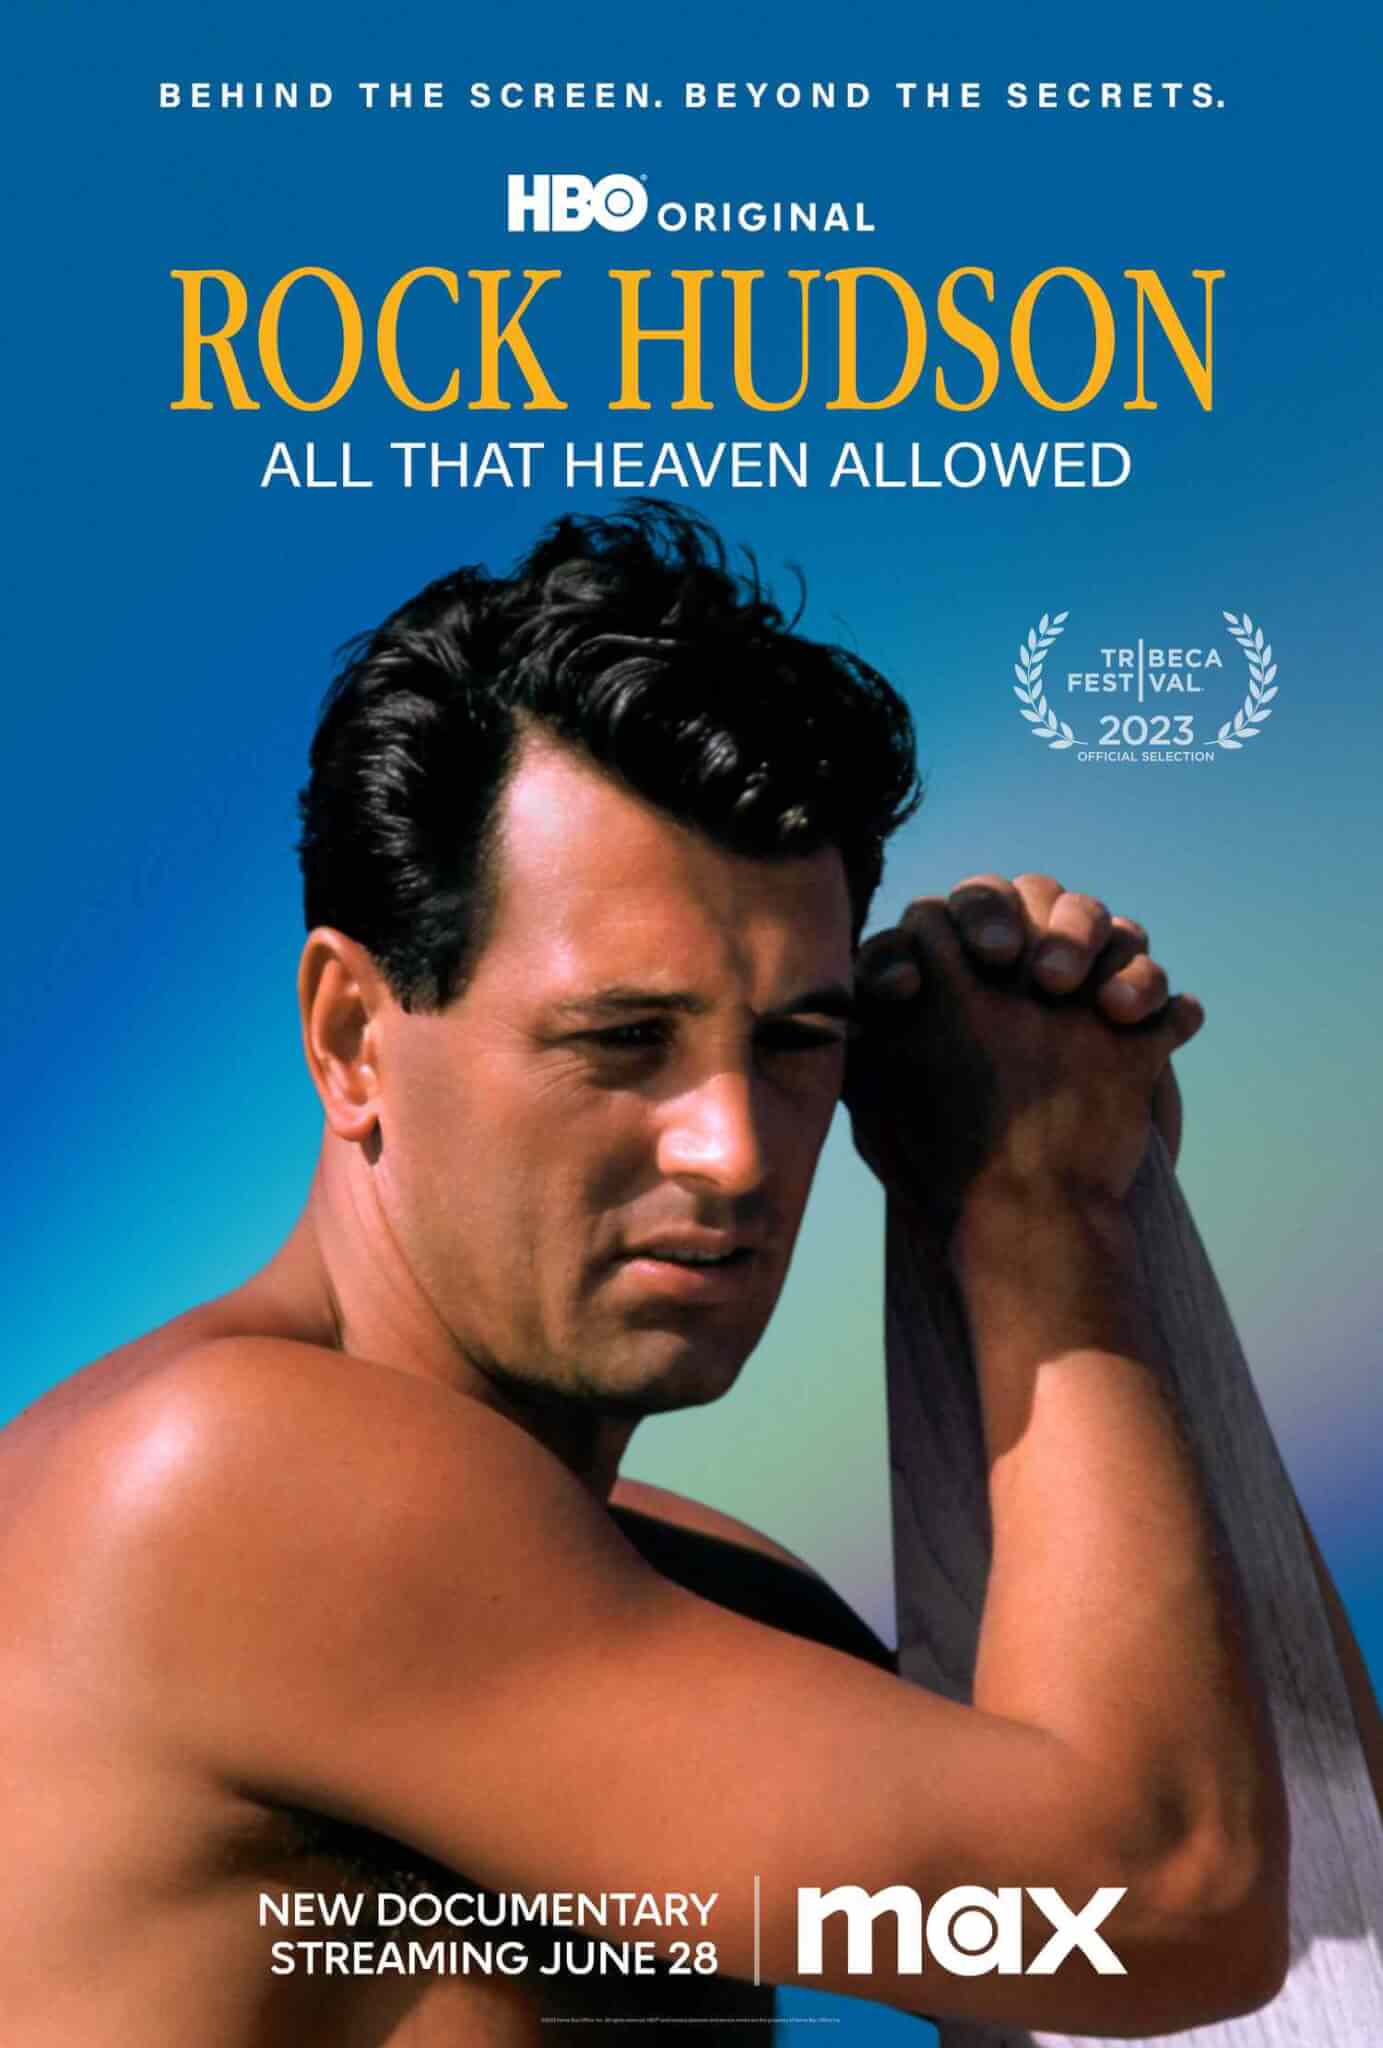 Rock Hudson: All That Heaven Allowed, il trailer del docufilm sul divo che non potè mai dire di essere gay - Rock Hudson HBO documentary 060623 01 c5c80f53c59c4c97afc3dbb6ba23bf1b 1 - Gay.it